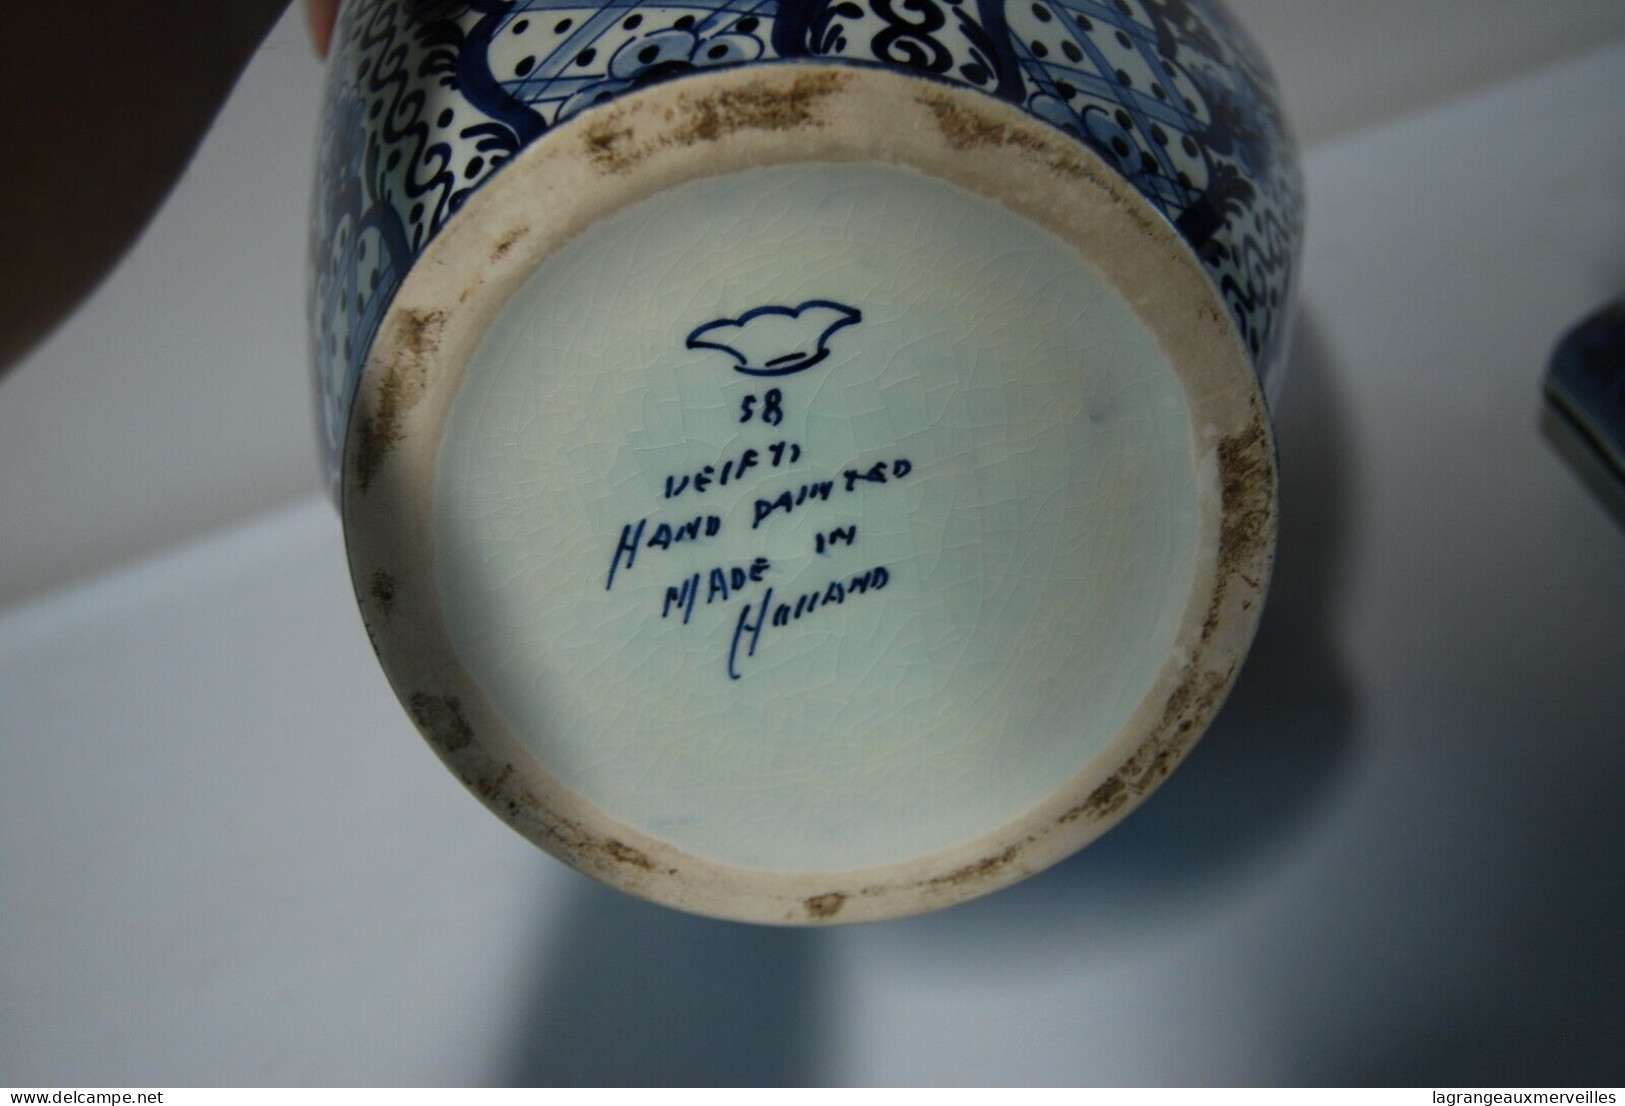 E1 Magnifique Pot - Vase Avec Couvercle Et Fretel - Made In Holland - Art Populaire